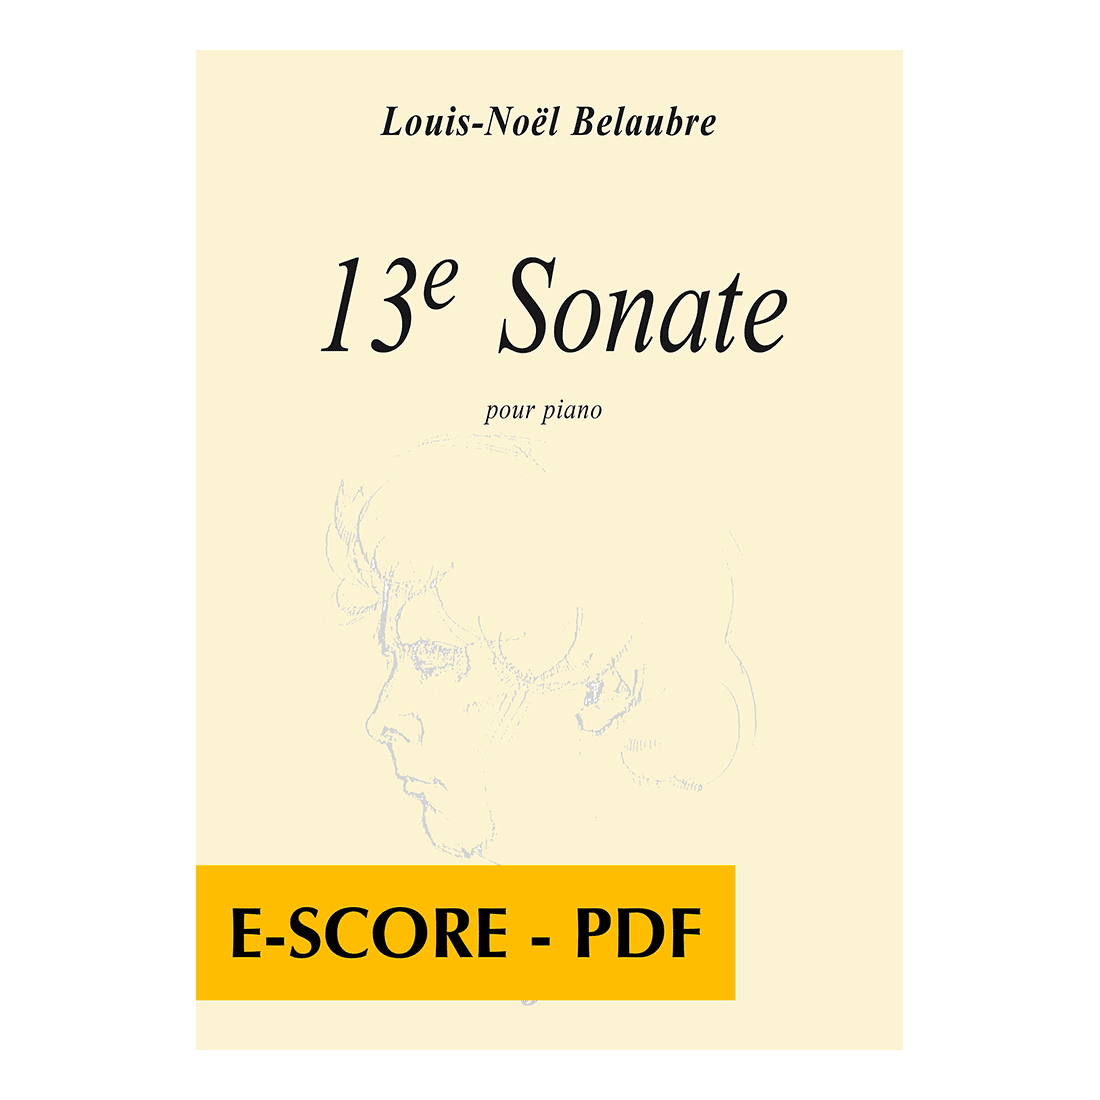 13e sonate pour piano - E-score PDF